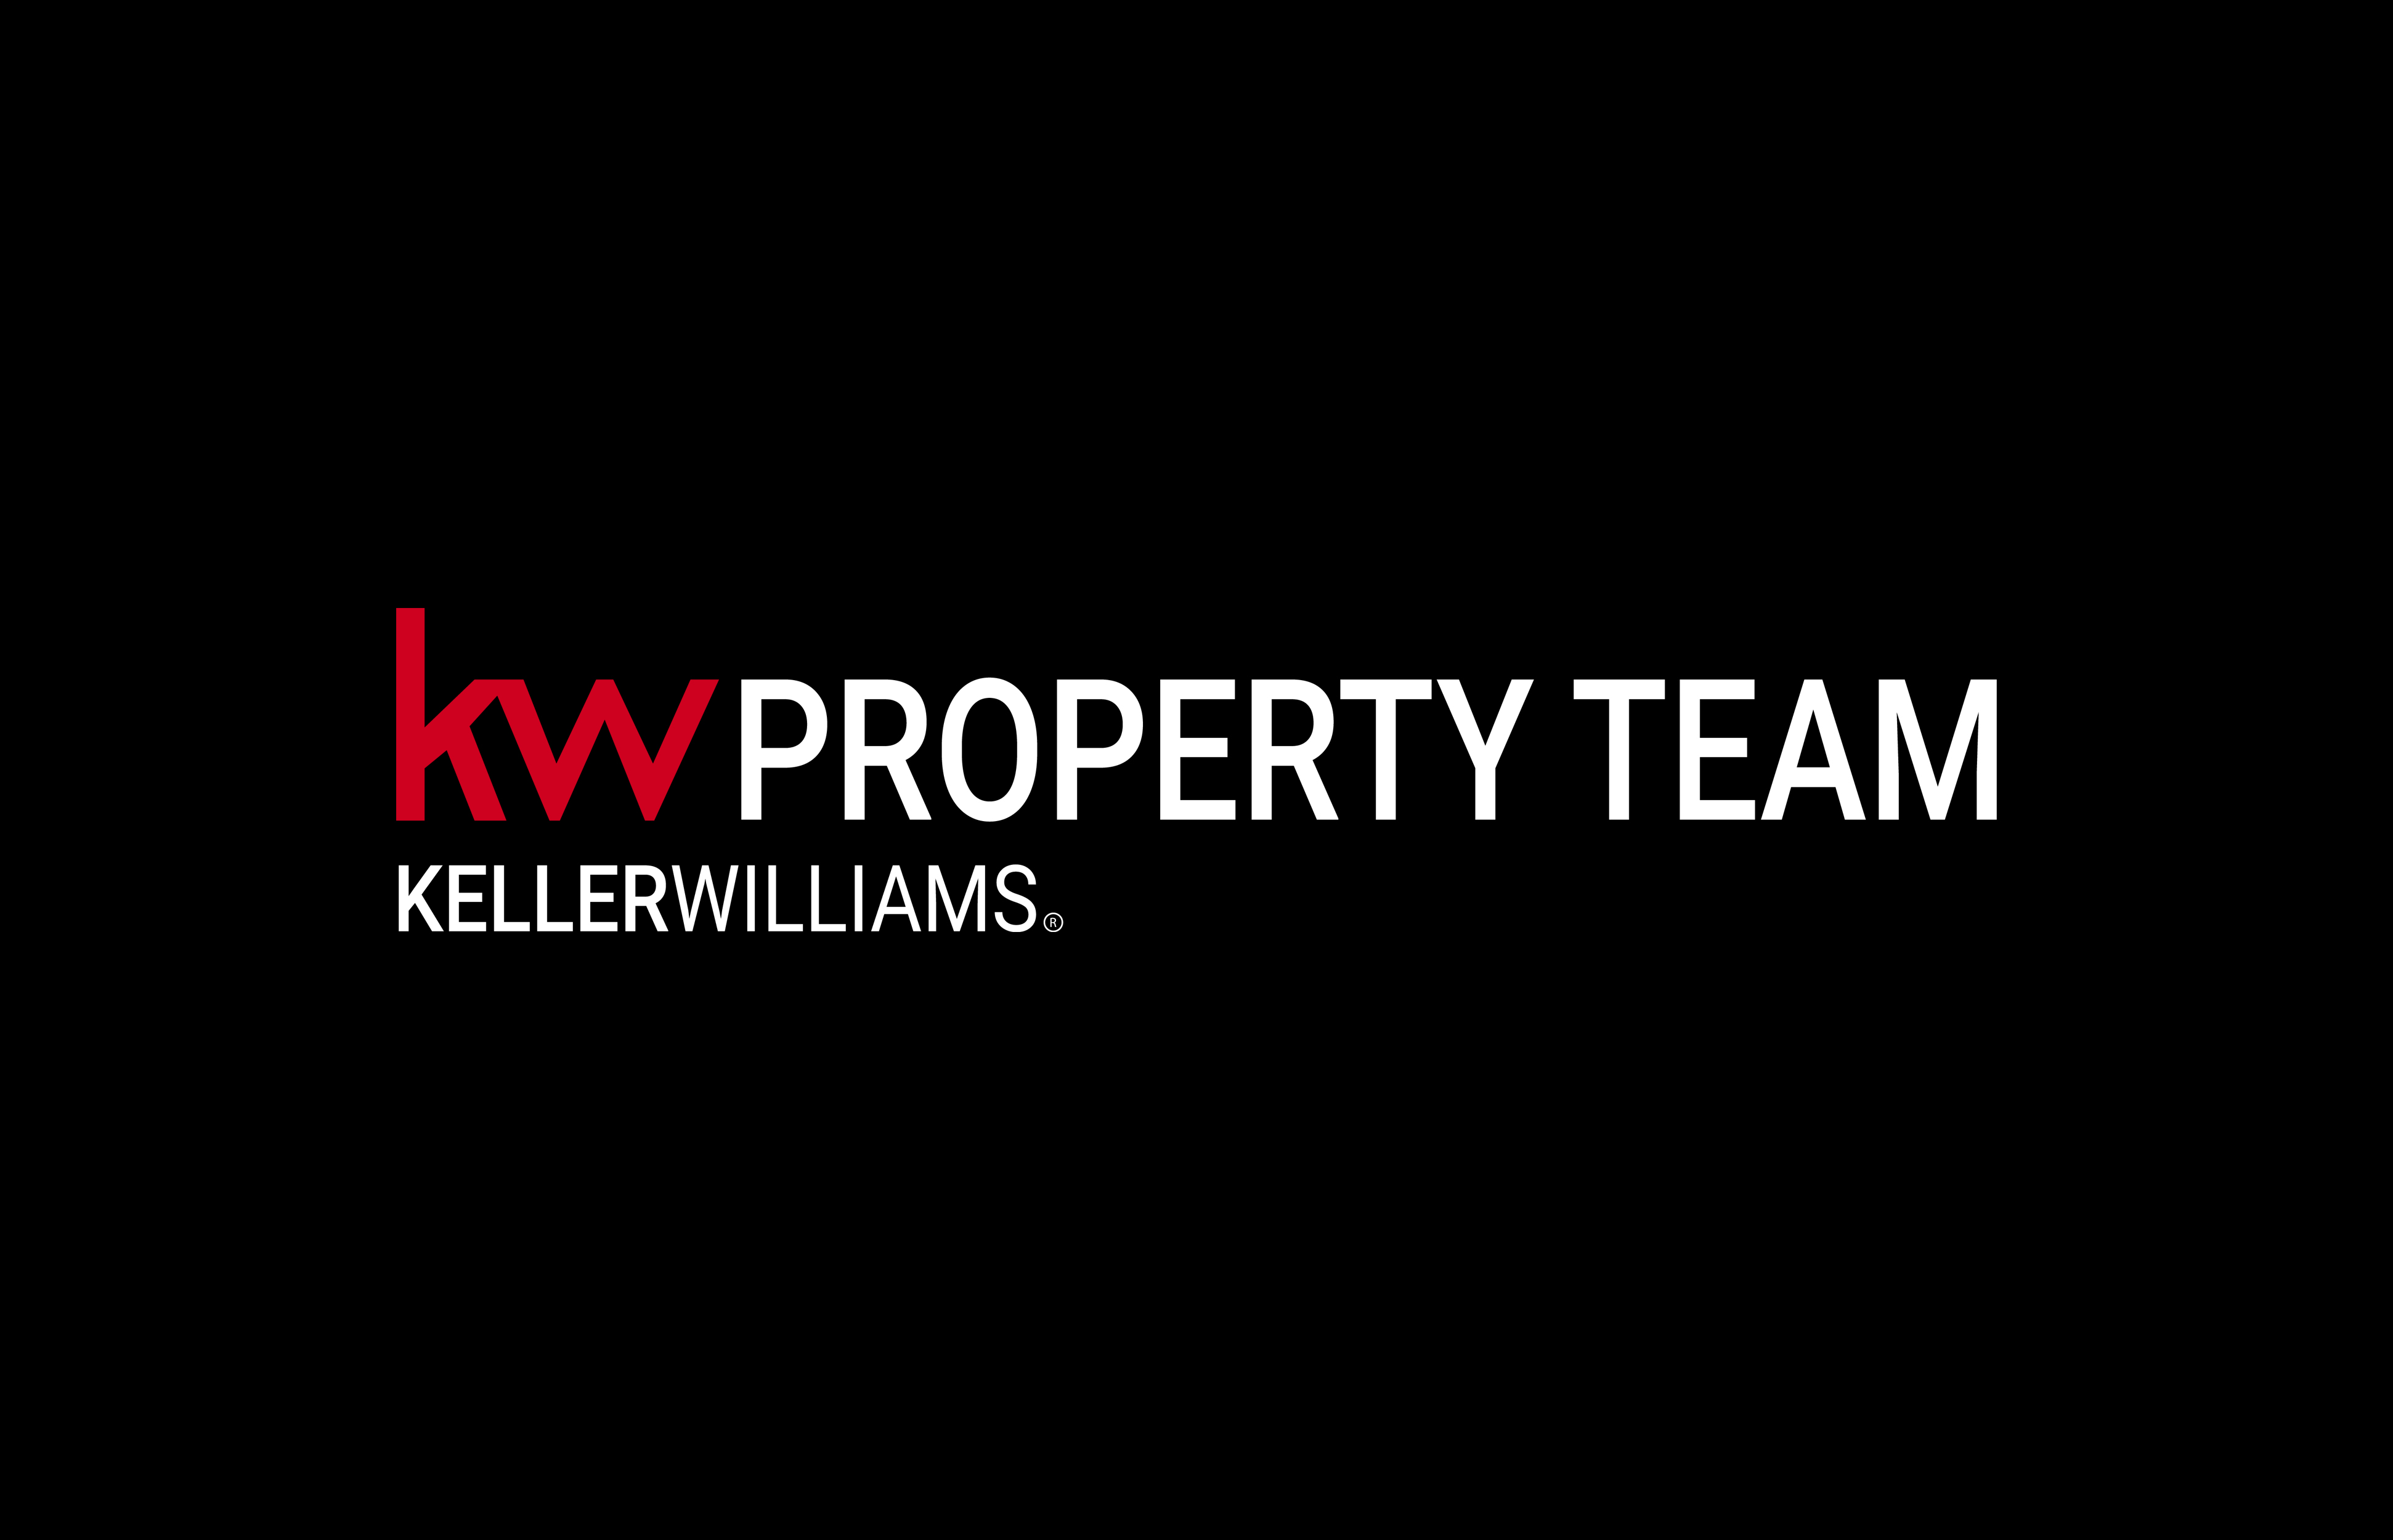 KW Property Team